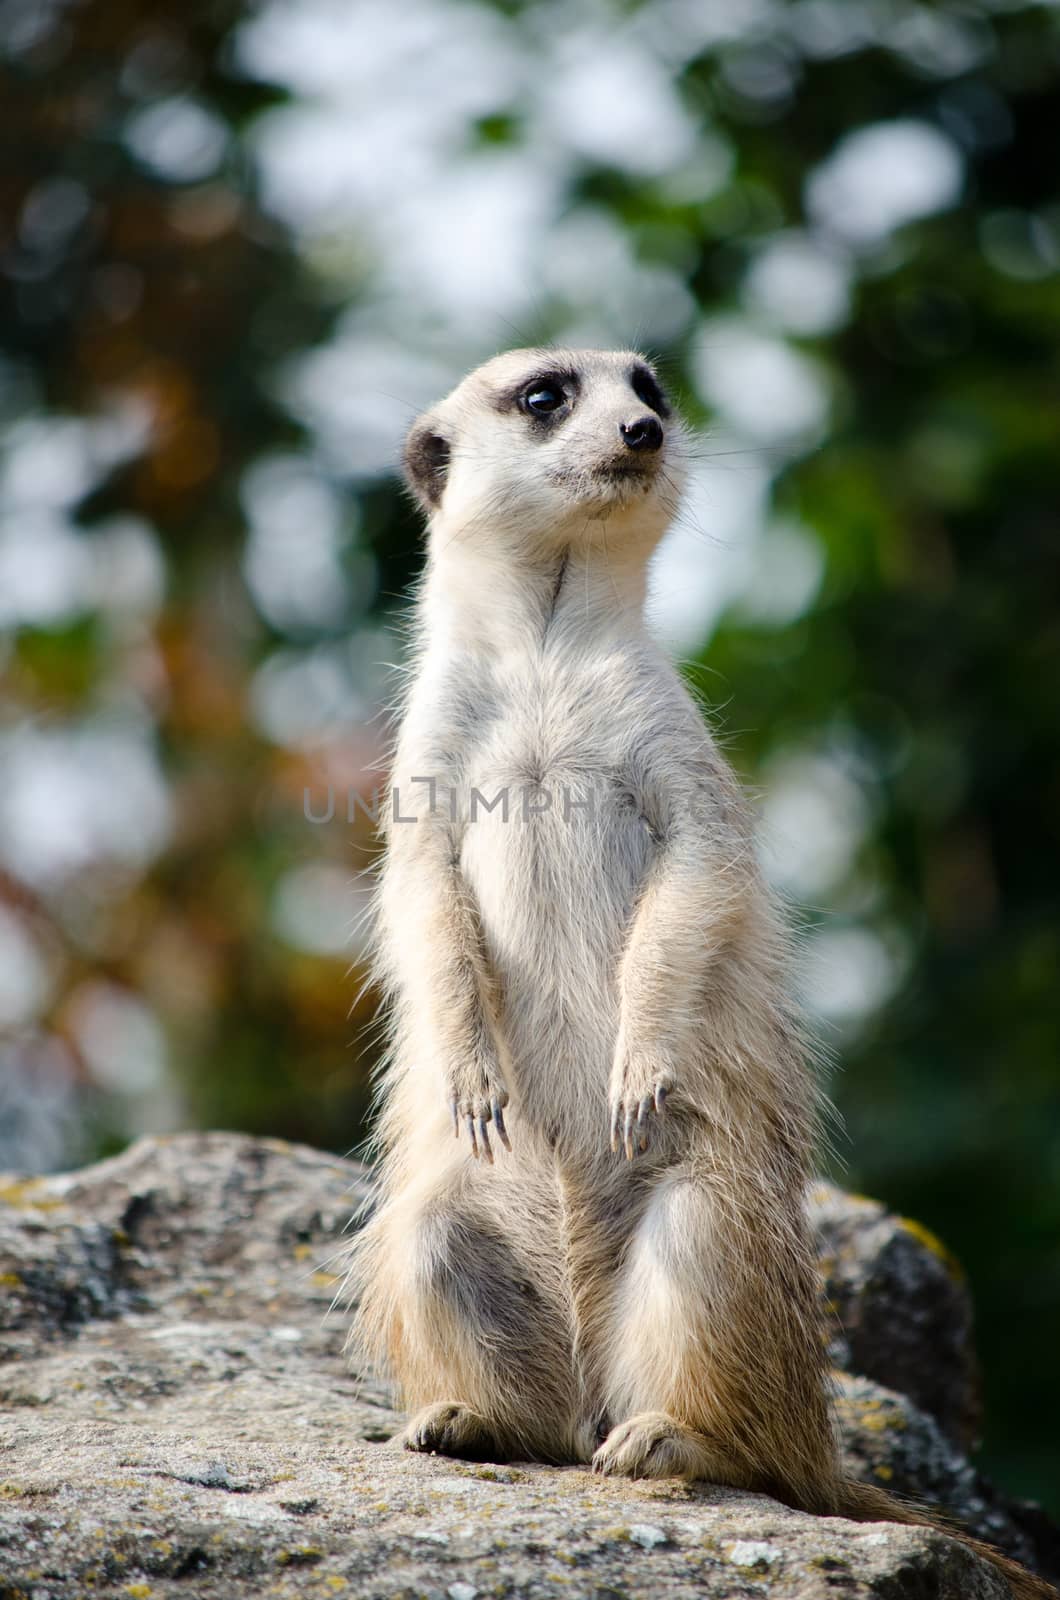 meerkat by sarkao